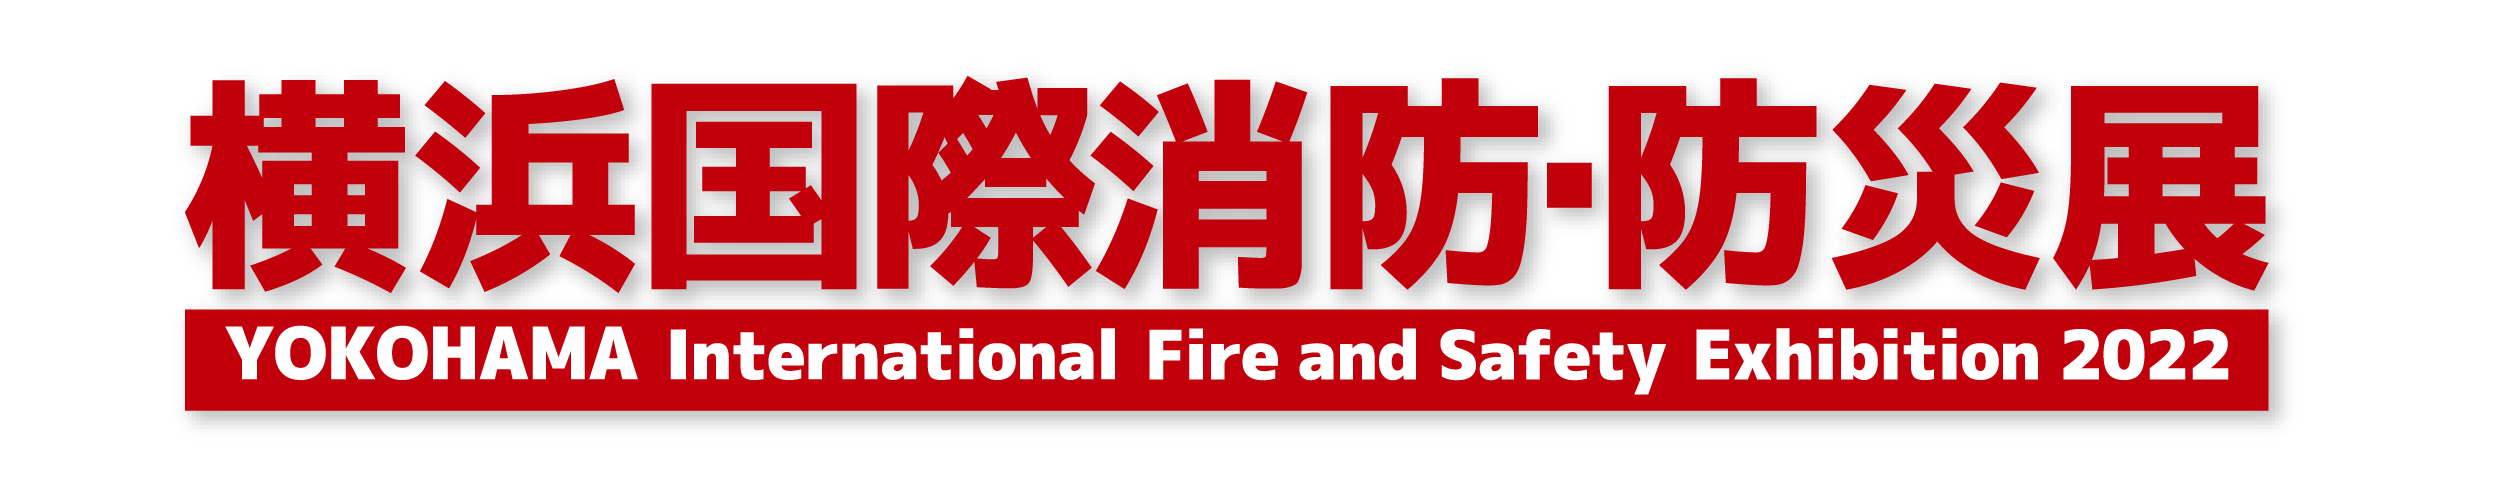 『横浜国際消防・防災展』に出展します。